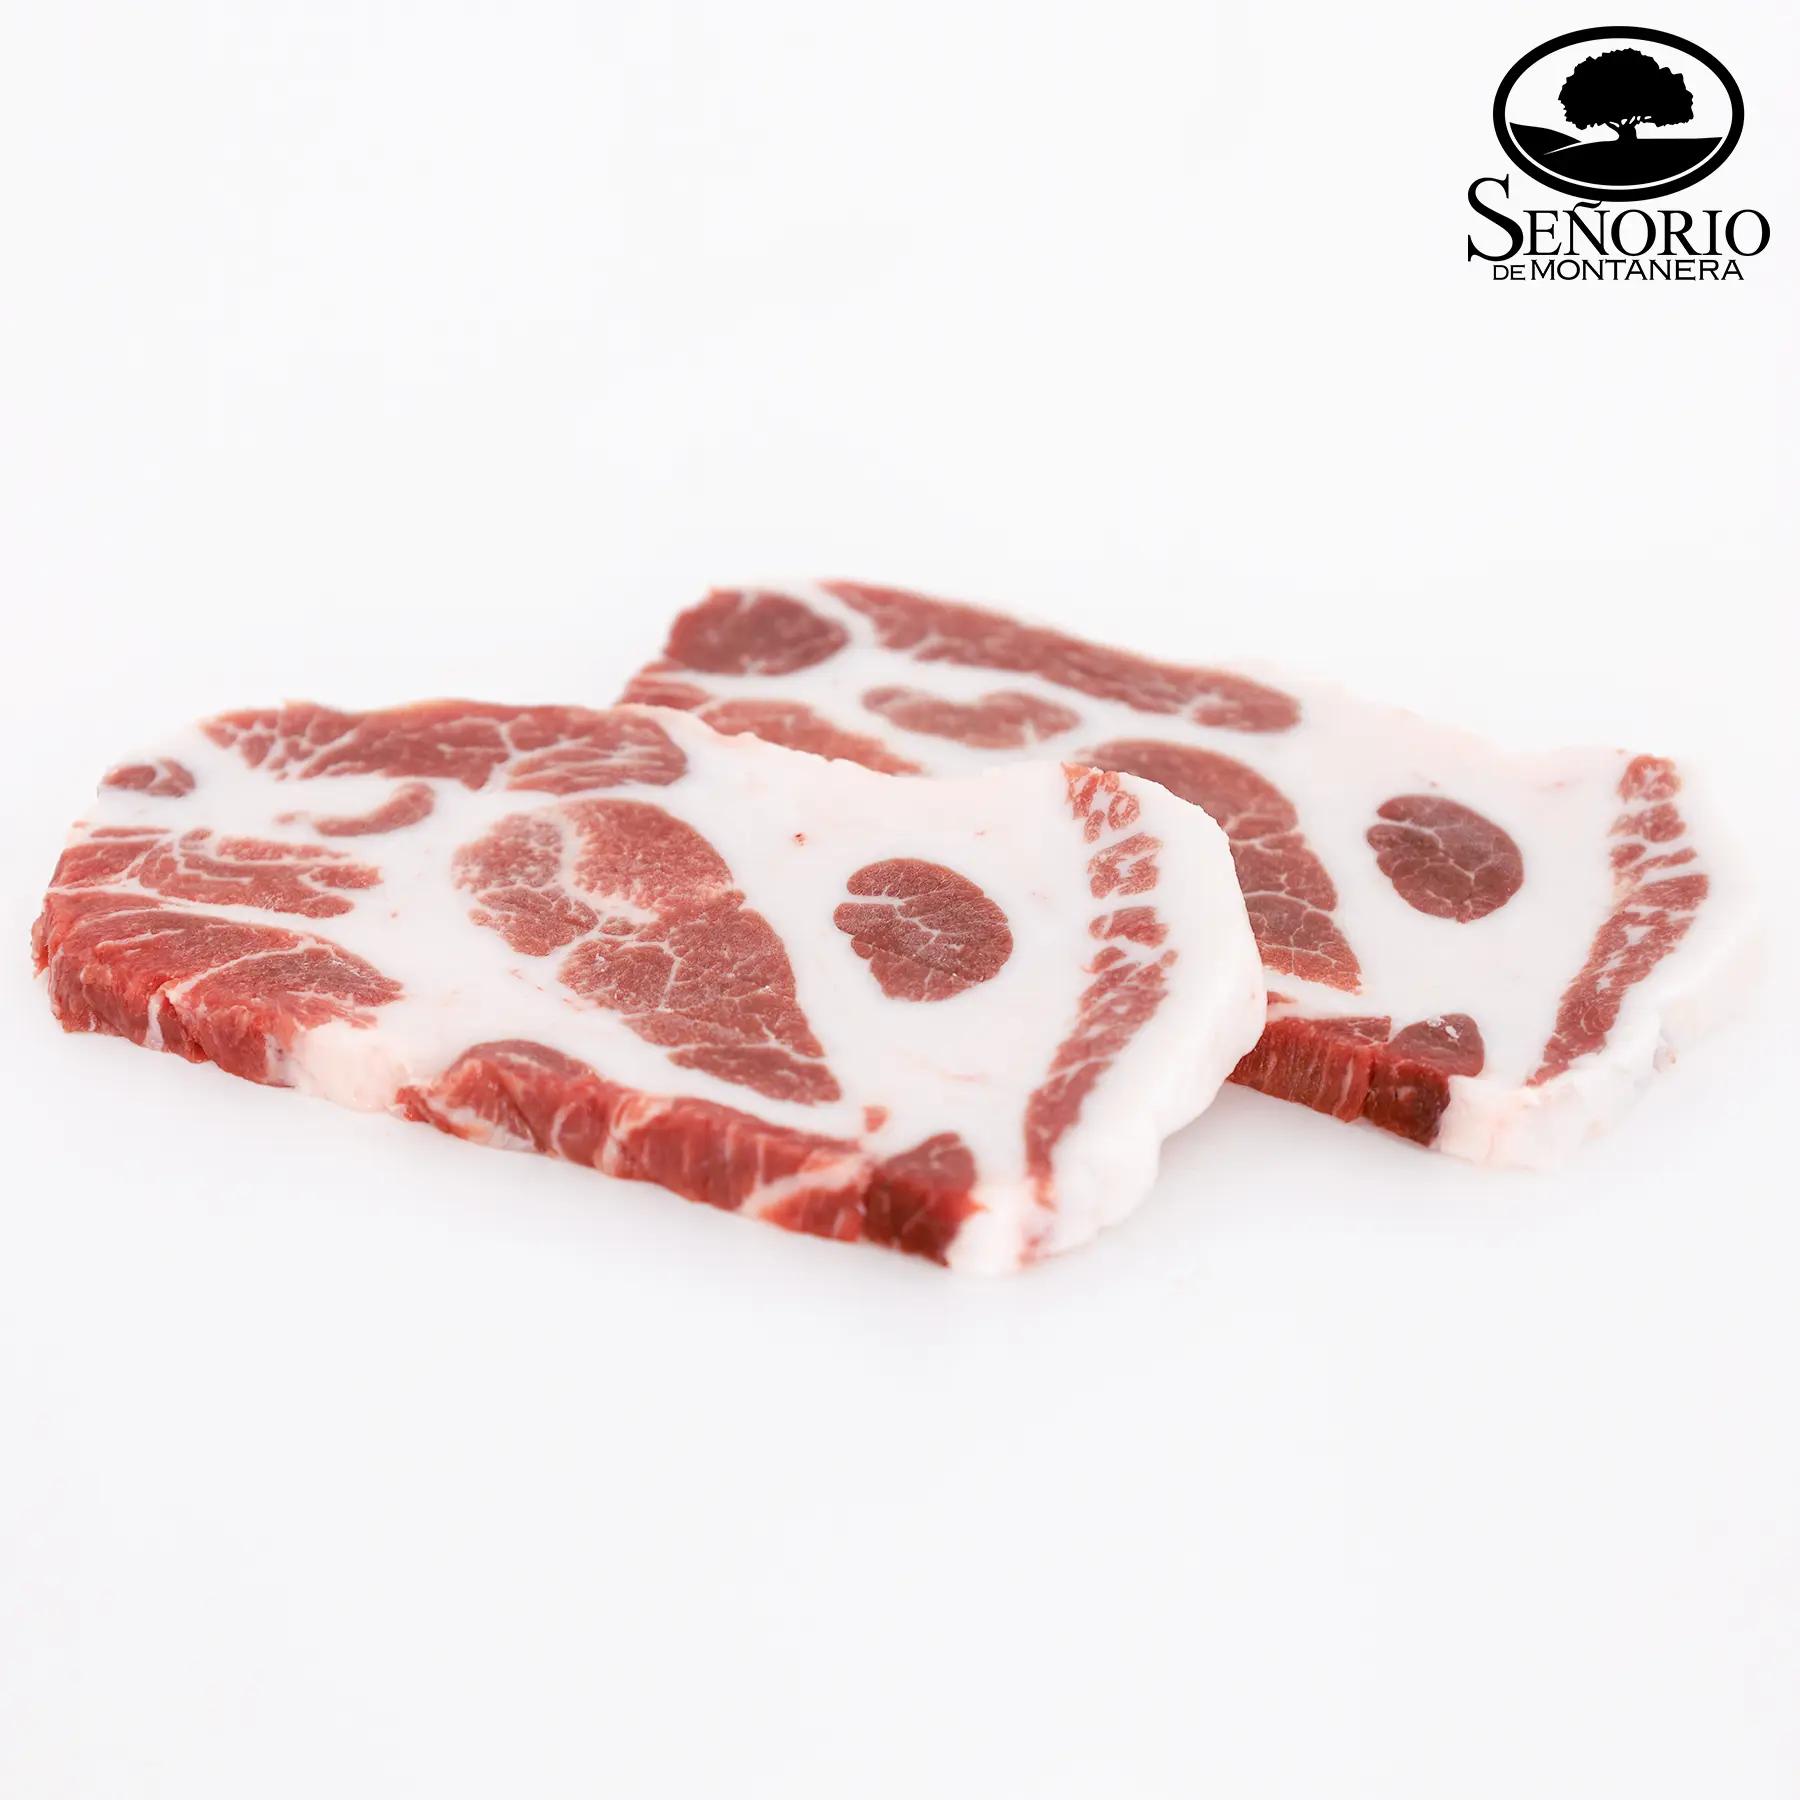 放牧豚 イベリコ豚肩ロース ステーキ ベジョータ | 業務用豚肉通販卸